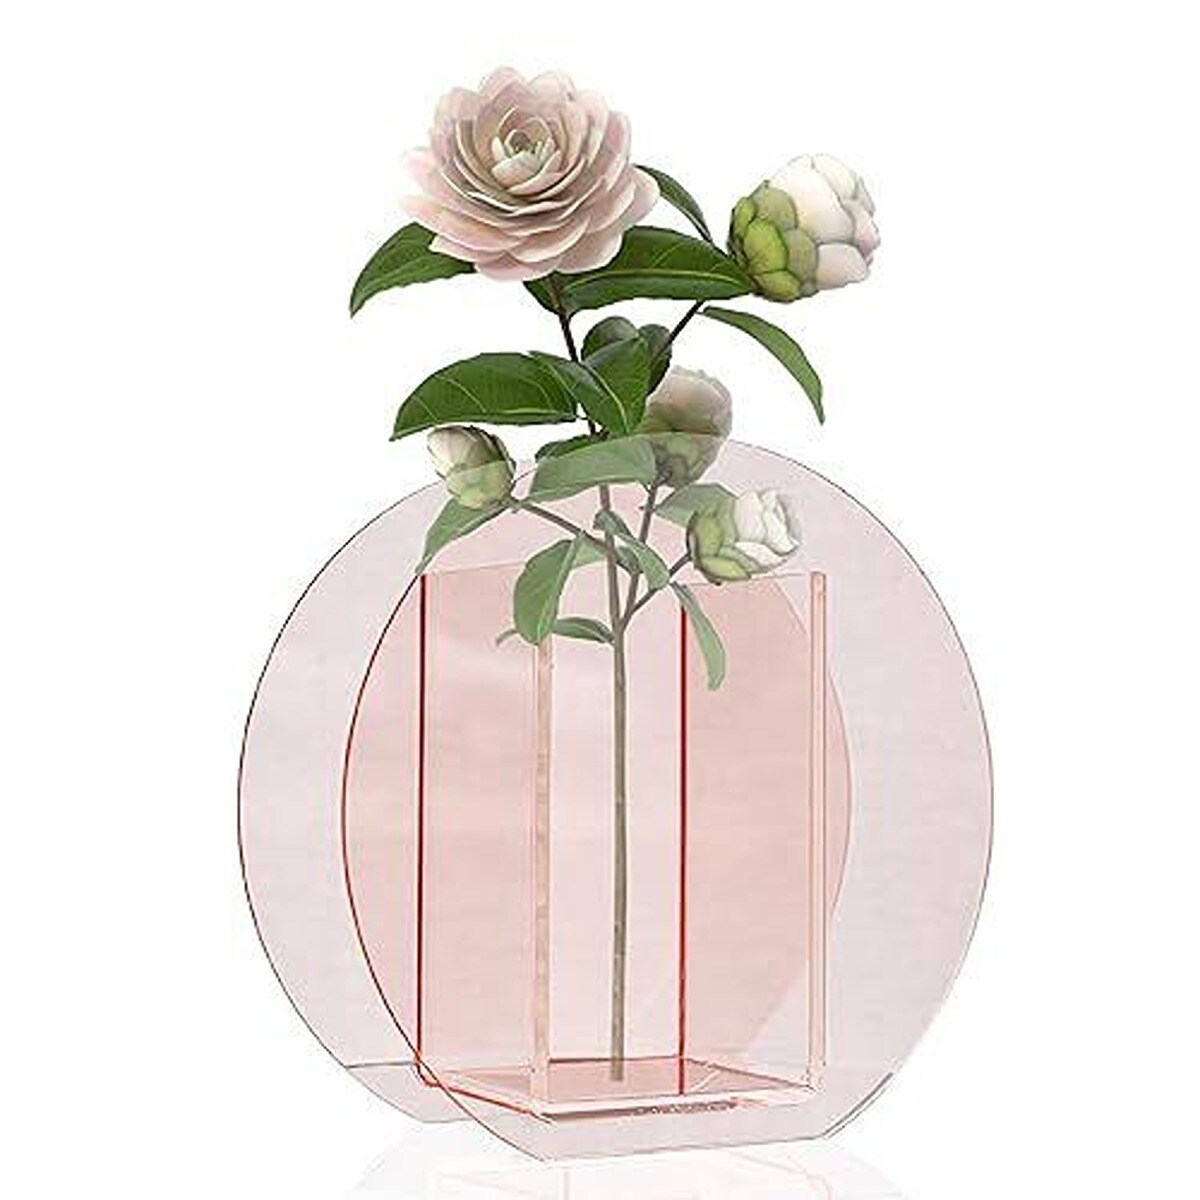 Decorative Acrylic Flower Vase